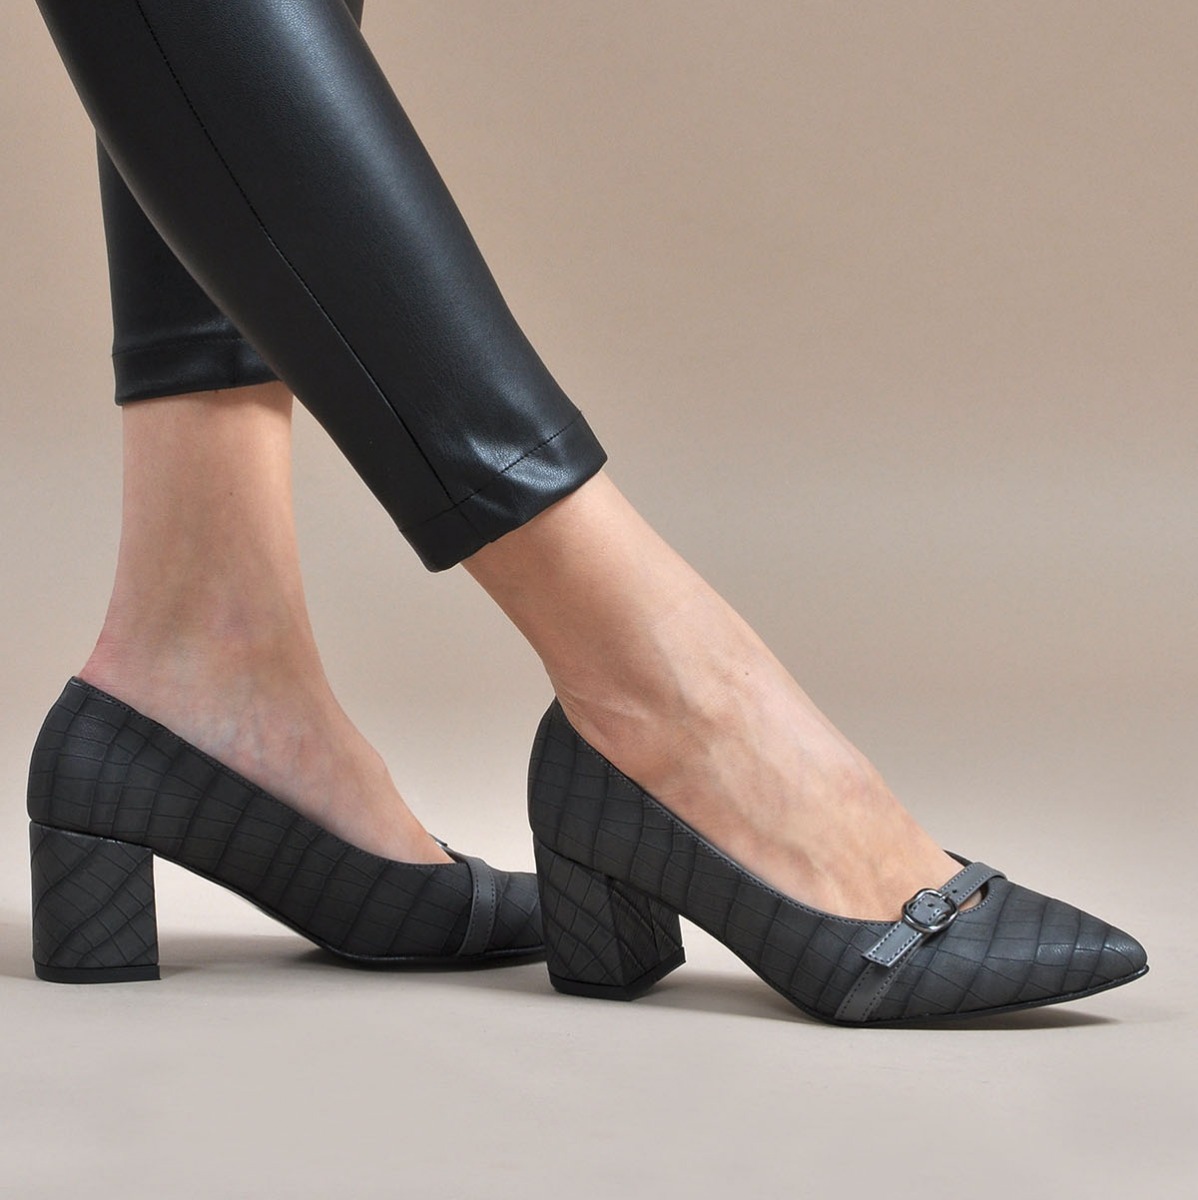 Flo Kadın  Gri-Kroko Klasik Topuklu Ayakkabı VZN19-110K. 1